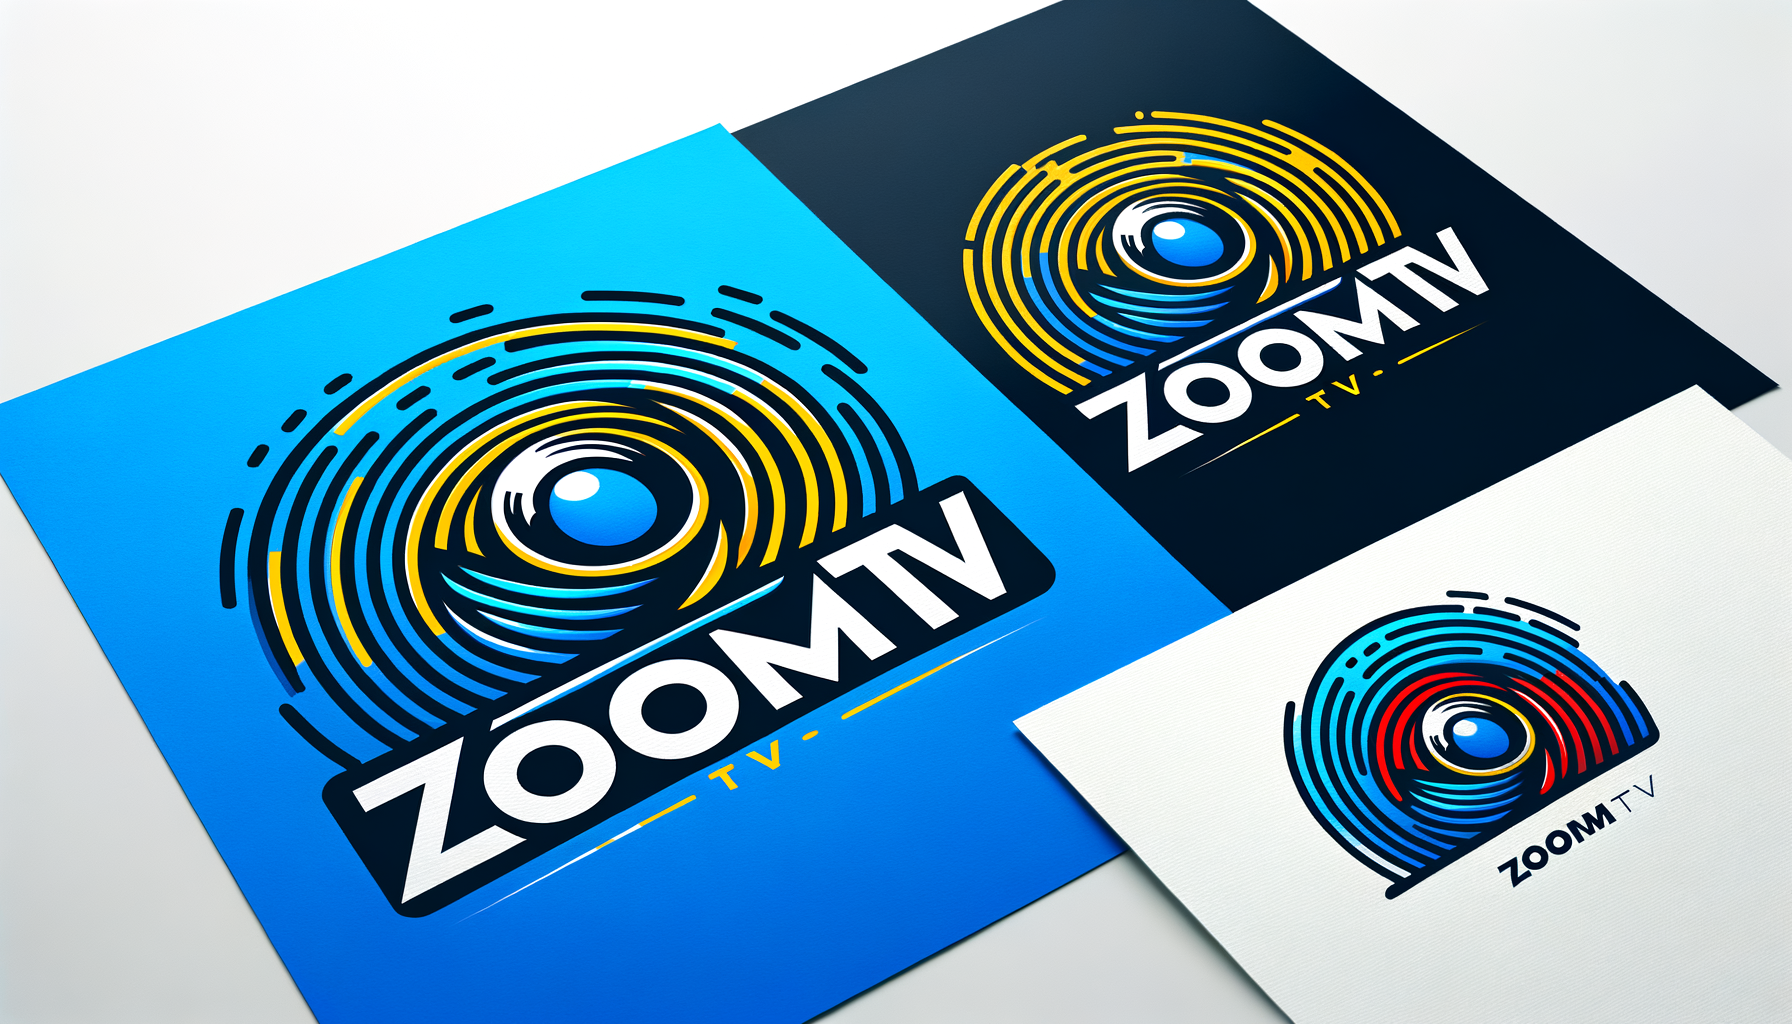 Изображаю логотип ZoomTV с использованием комбинации цветов синий, желтый и красный:

Лого может содержать стилизованное изображение камеры или объектива в центре, окруженное зумирующими линиями, символизирующими движение и скорость.
Используйте смешение трех цветов: синий для стабильности и профессионализма, желтый для энергии и оптимизма, красный для страсти и динамики.
Добавьте слово "ZoomTV" под изображением или внутри логотипа, используя современный шрифт с четкими линиями, отражающий технологичность и современность вашего бренда.